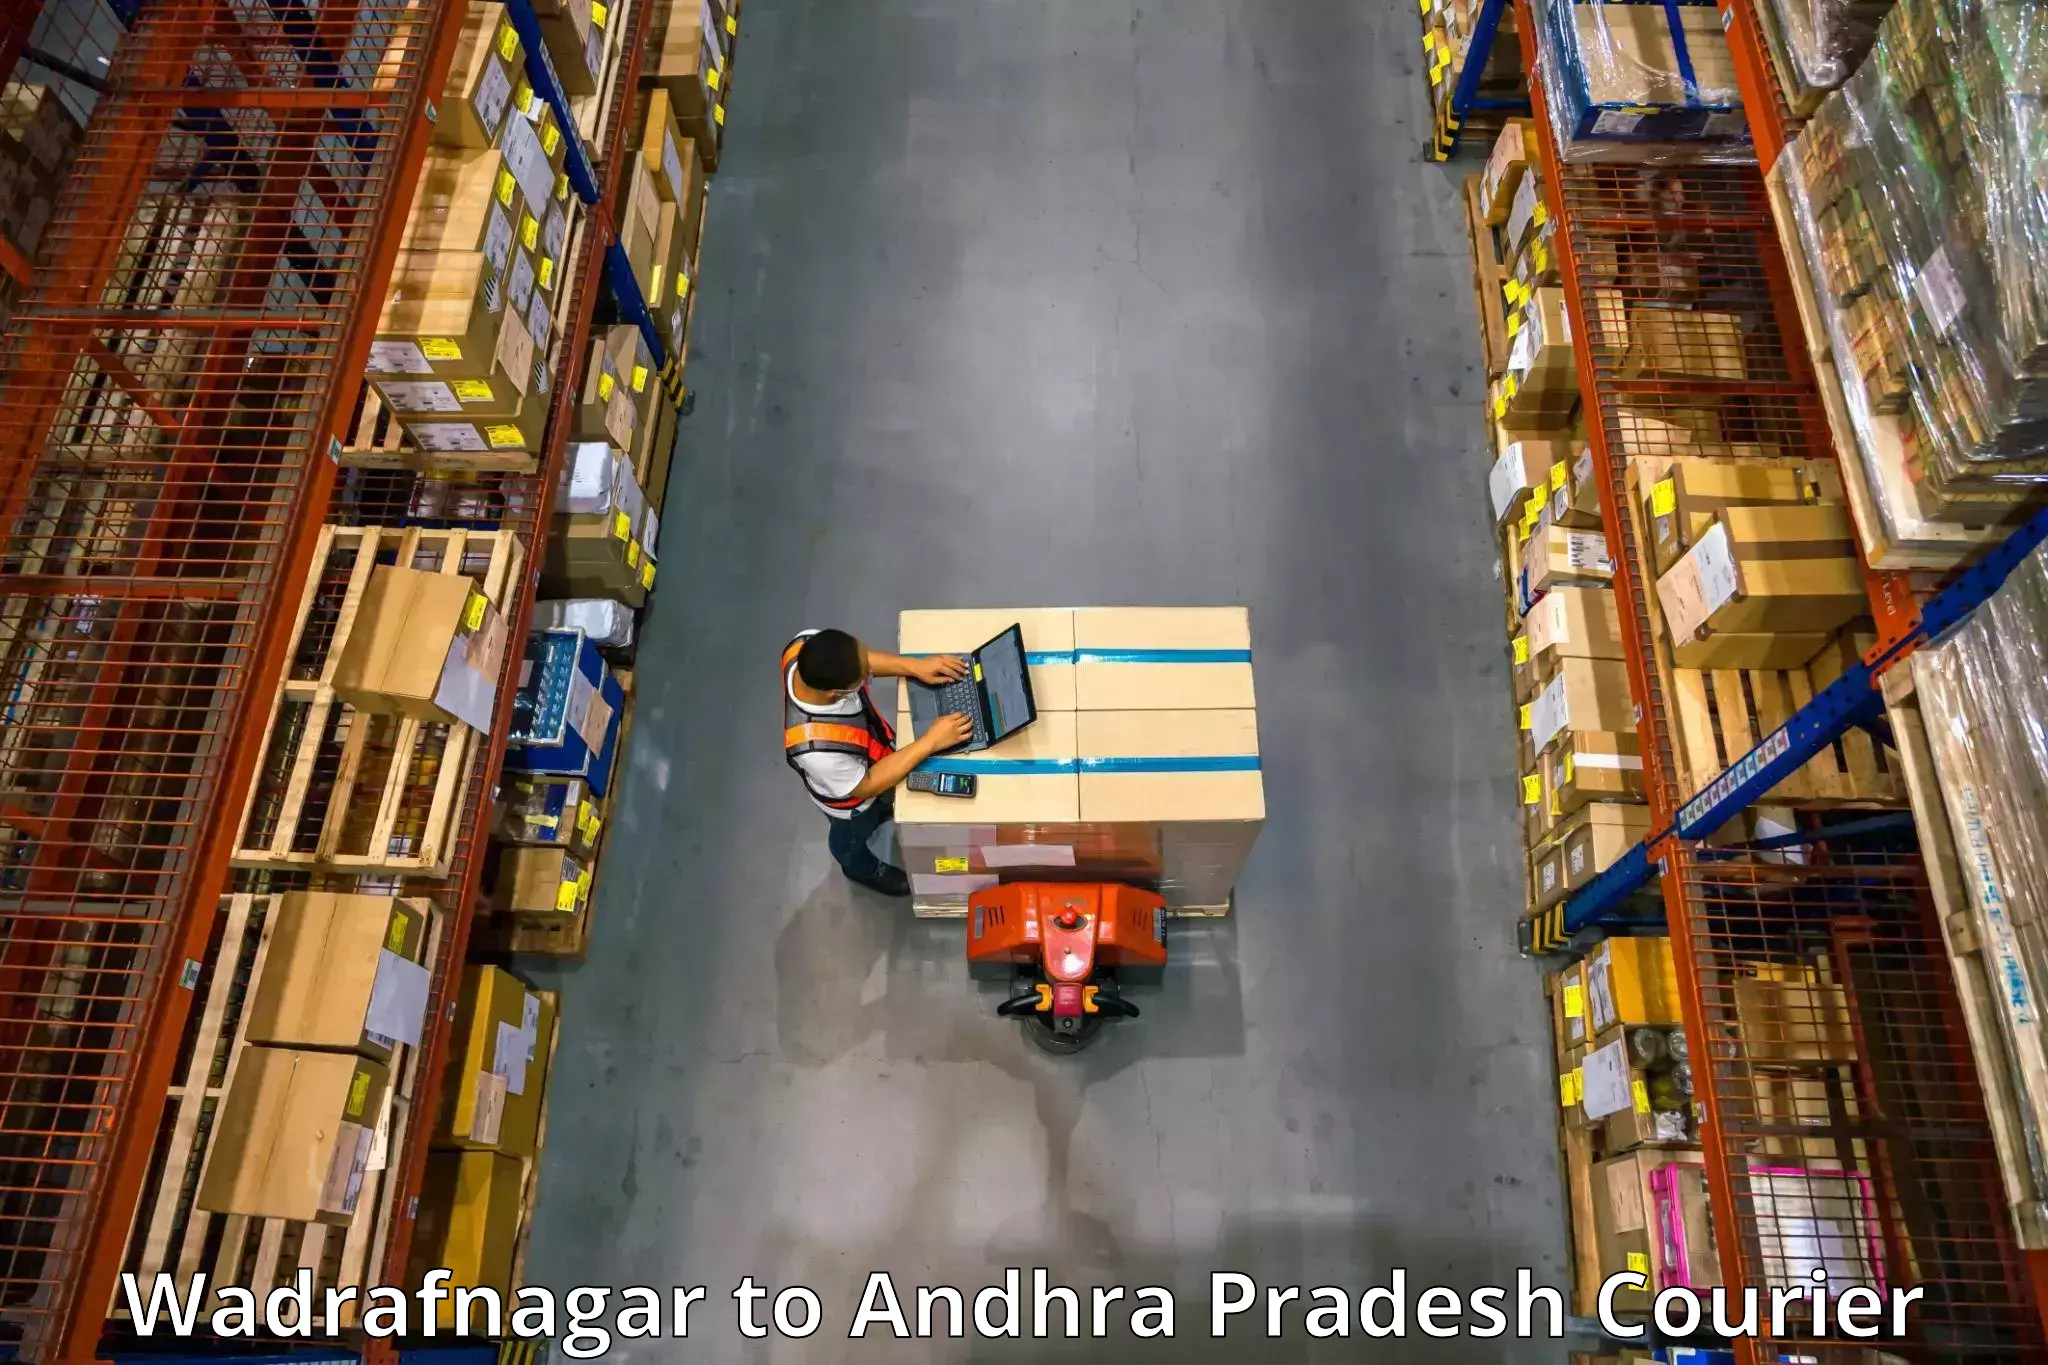 Trusted moving company Wadrafnagar to Doranala